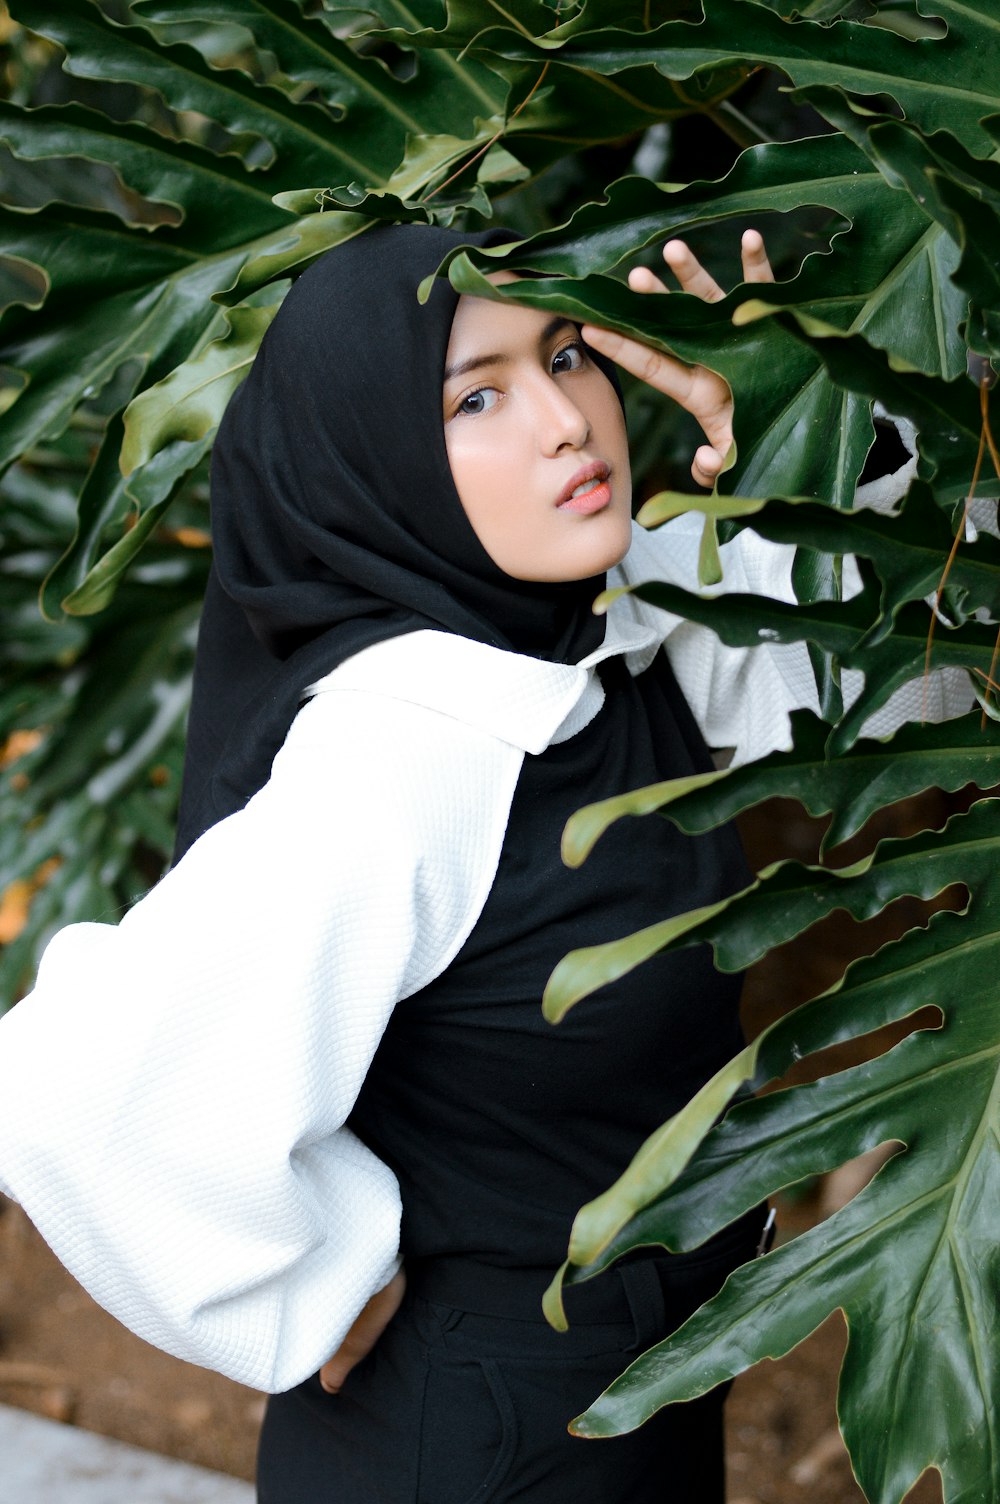 une personne portant un foulard noir debout devant une grande plante verte